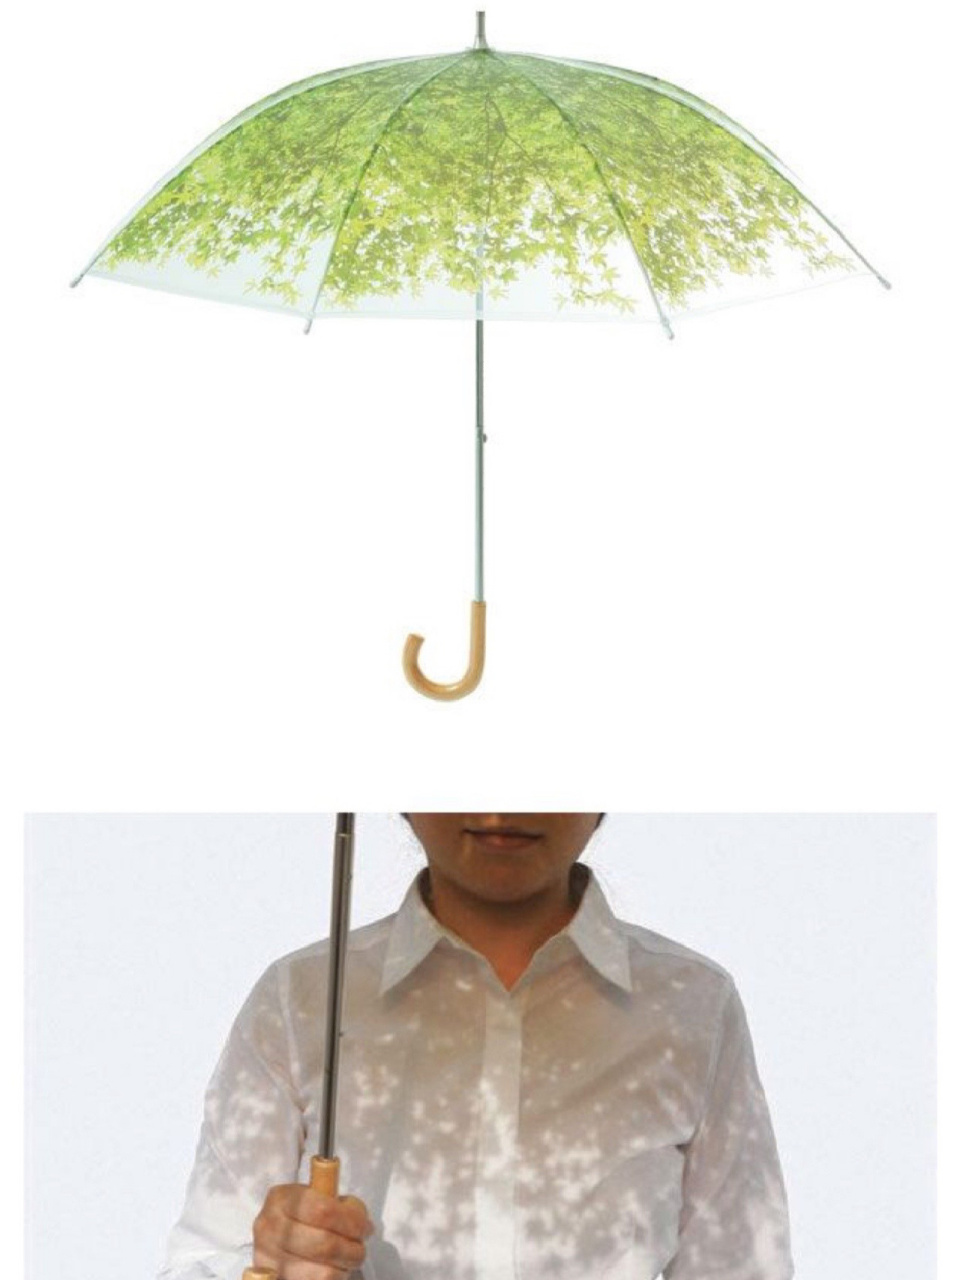 获奖雨伞设计创意图片